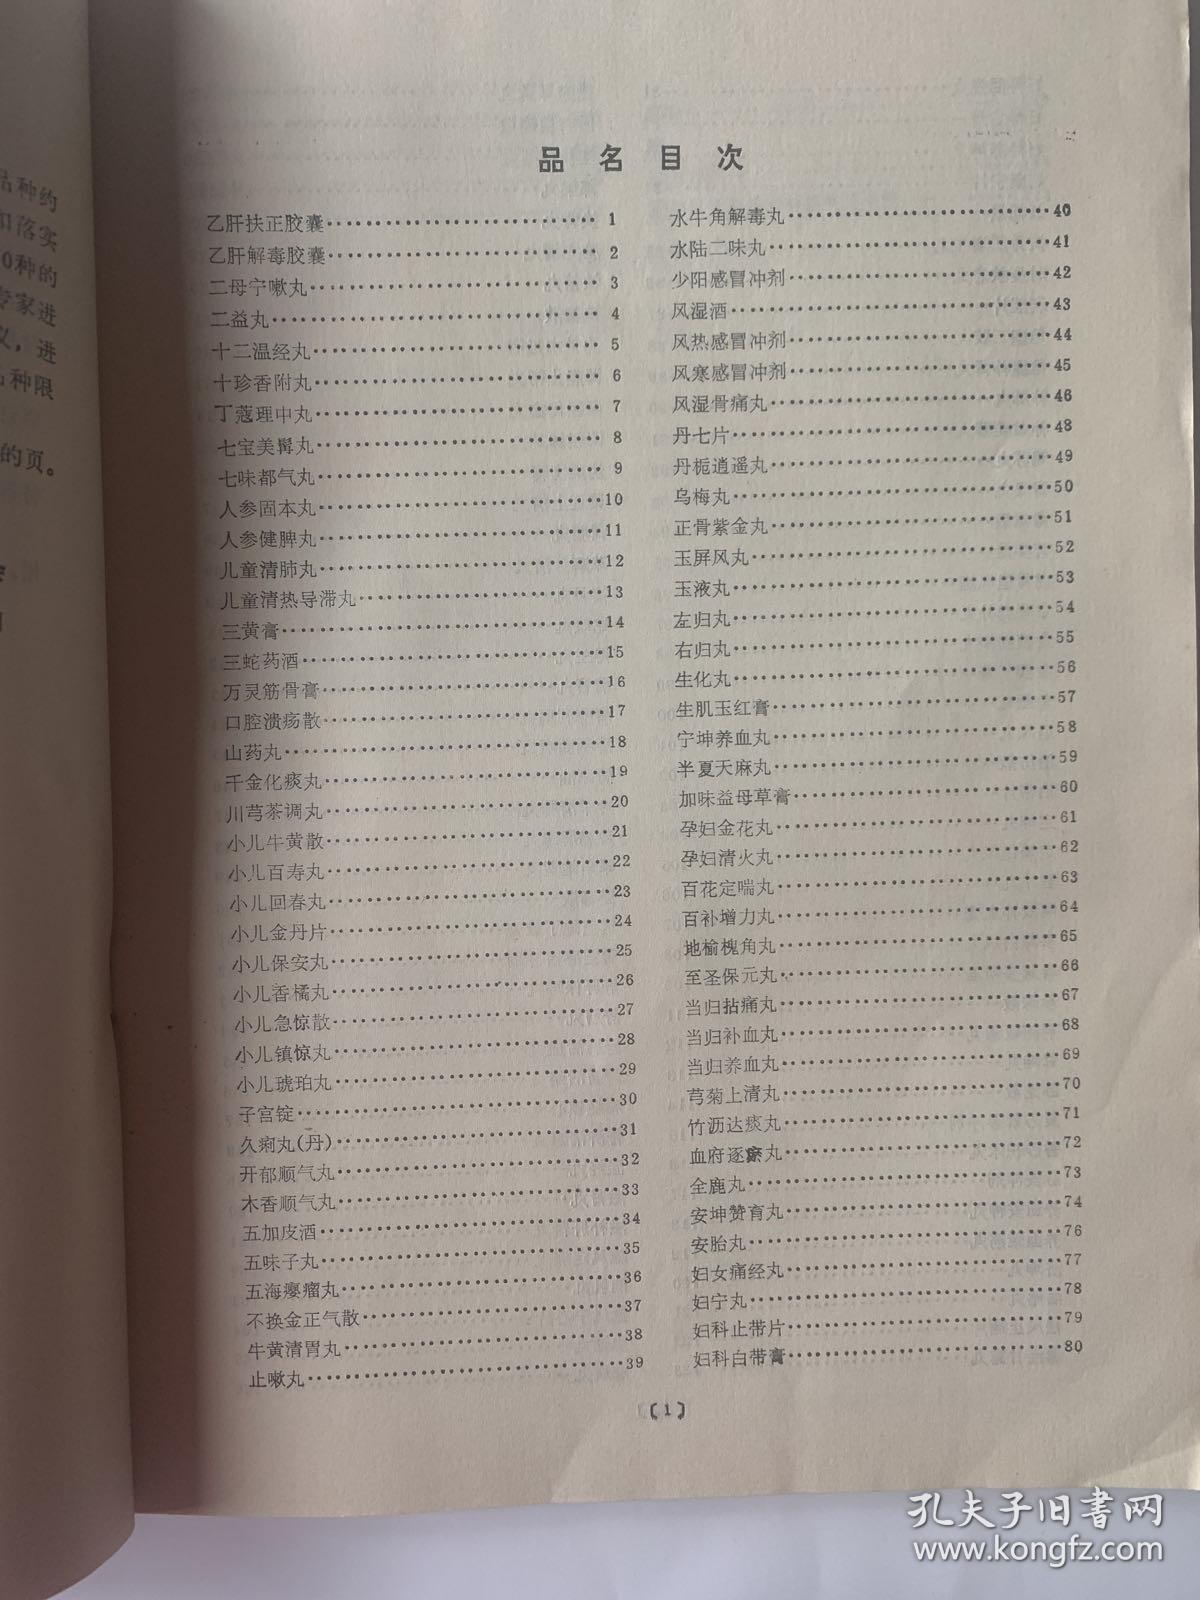 中华人民共和国卫生部 药品标准（中药成方制剂第一册）